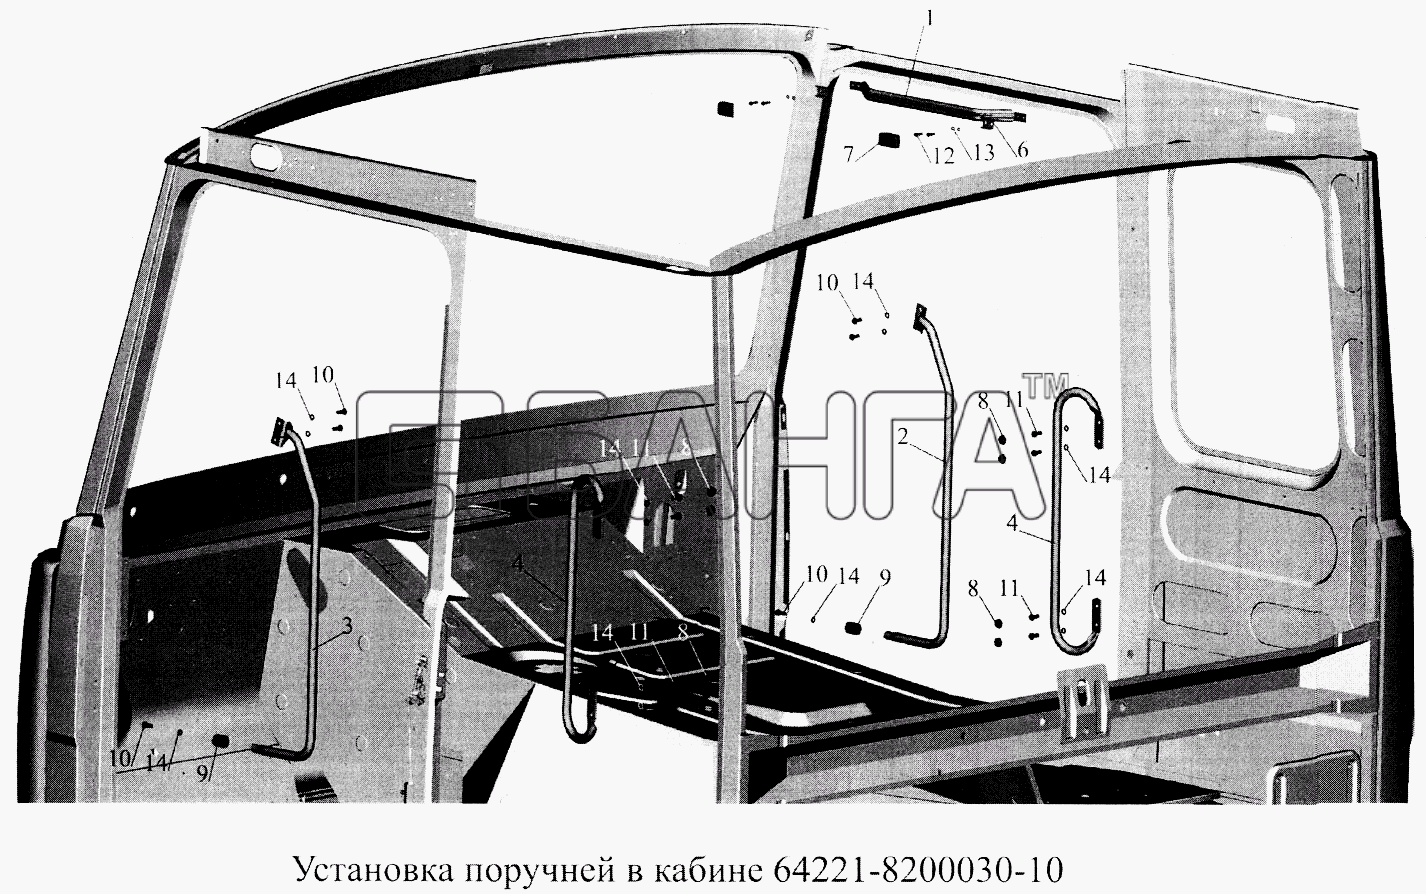 МАЗ МАЗ-5516А5 Схема Установка поручней в кабине banga.ua